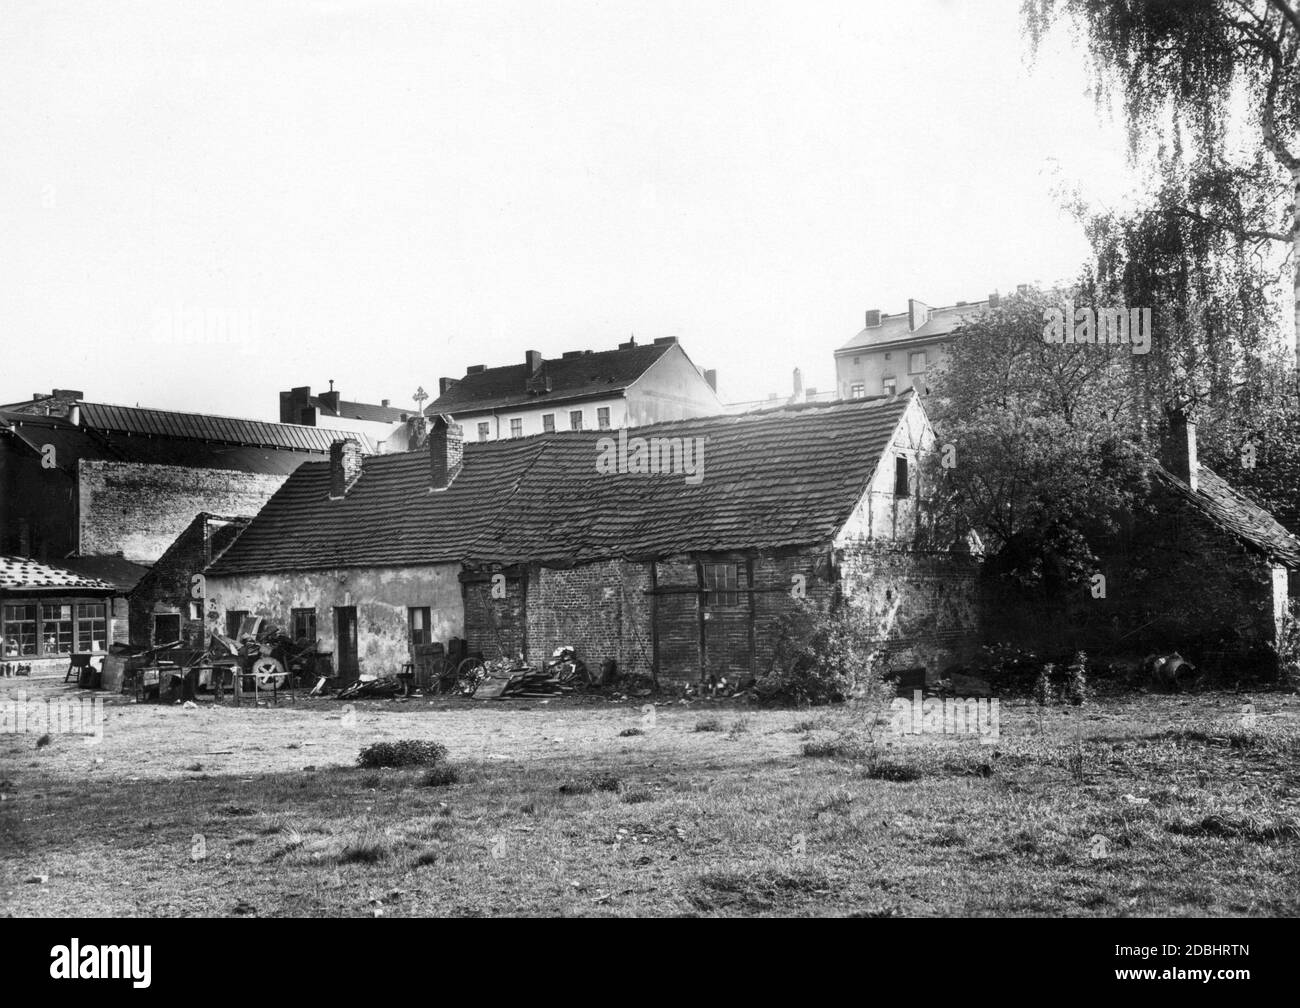 La fotografia del 1932 mostra una vecchia casa colonica decadente e abbandonata a Berlino a Muellerstrasse 16, dietro la quale già sorgono le case e gli affittuari più moderni della città in crescita. Foto Stock